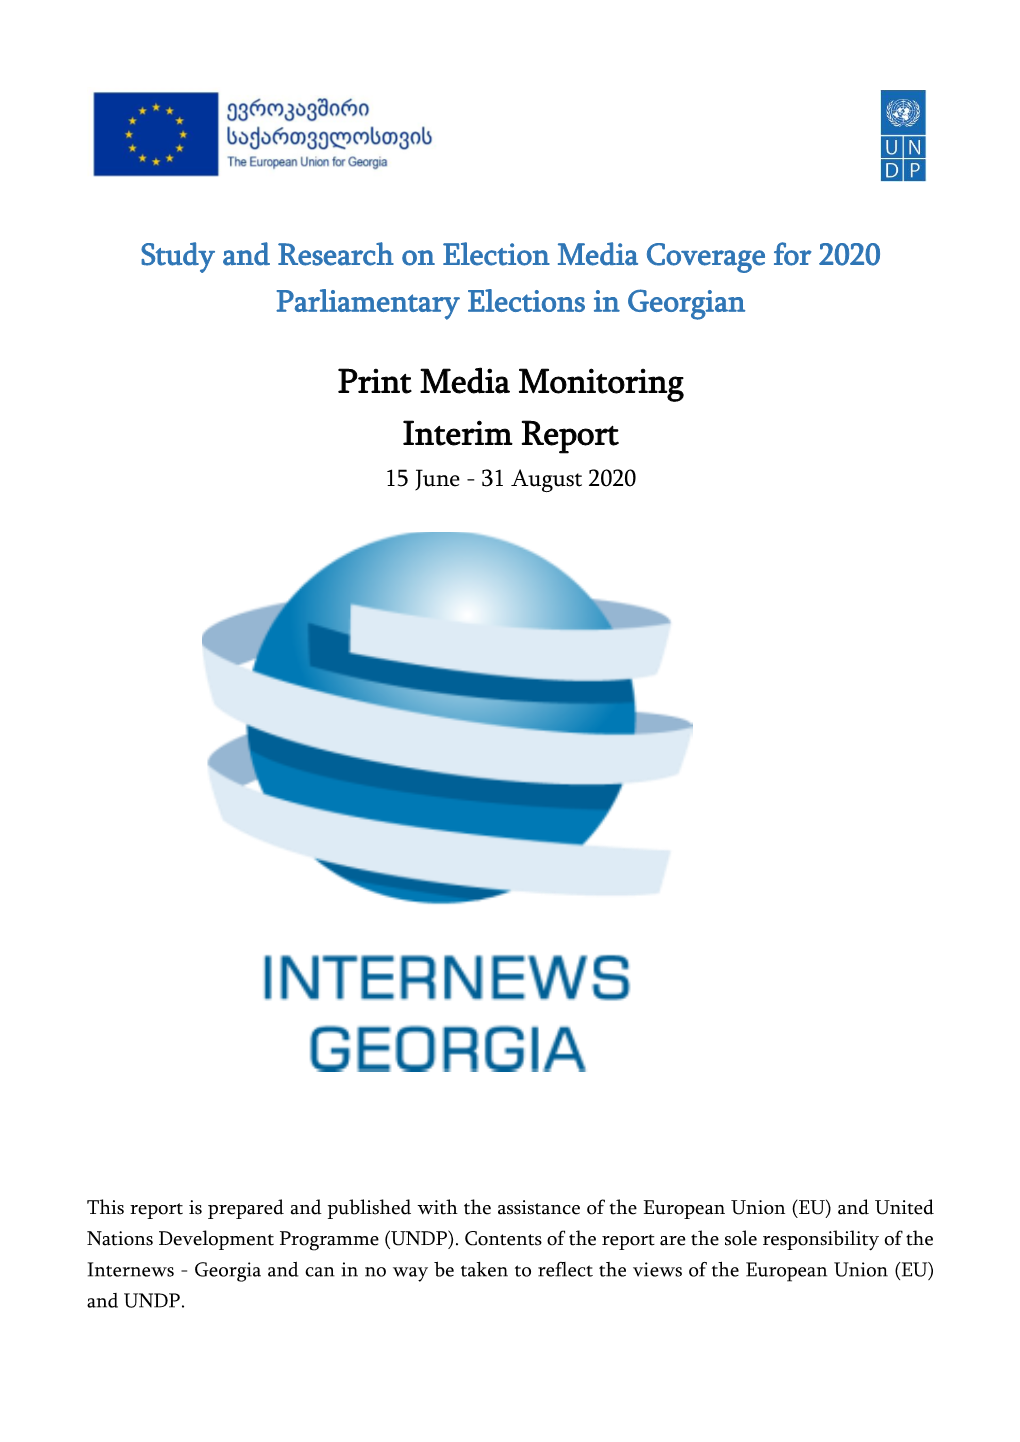 Print Media Monitoring Interim Report 15 June - 31 August 2020